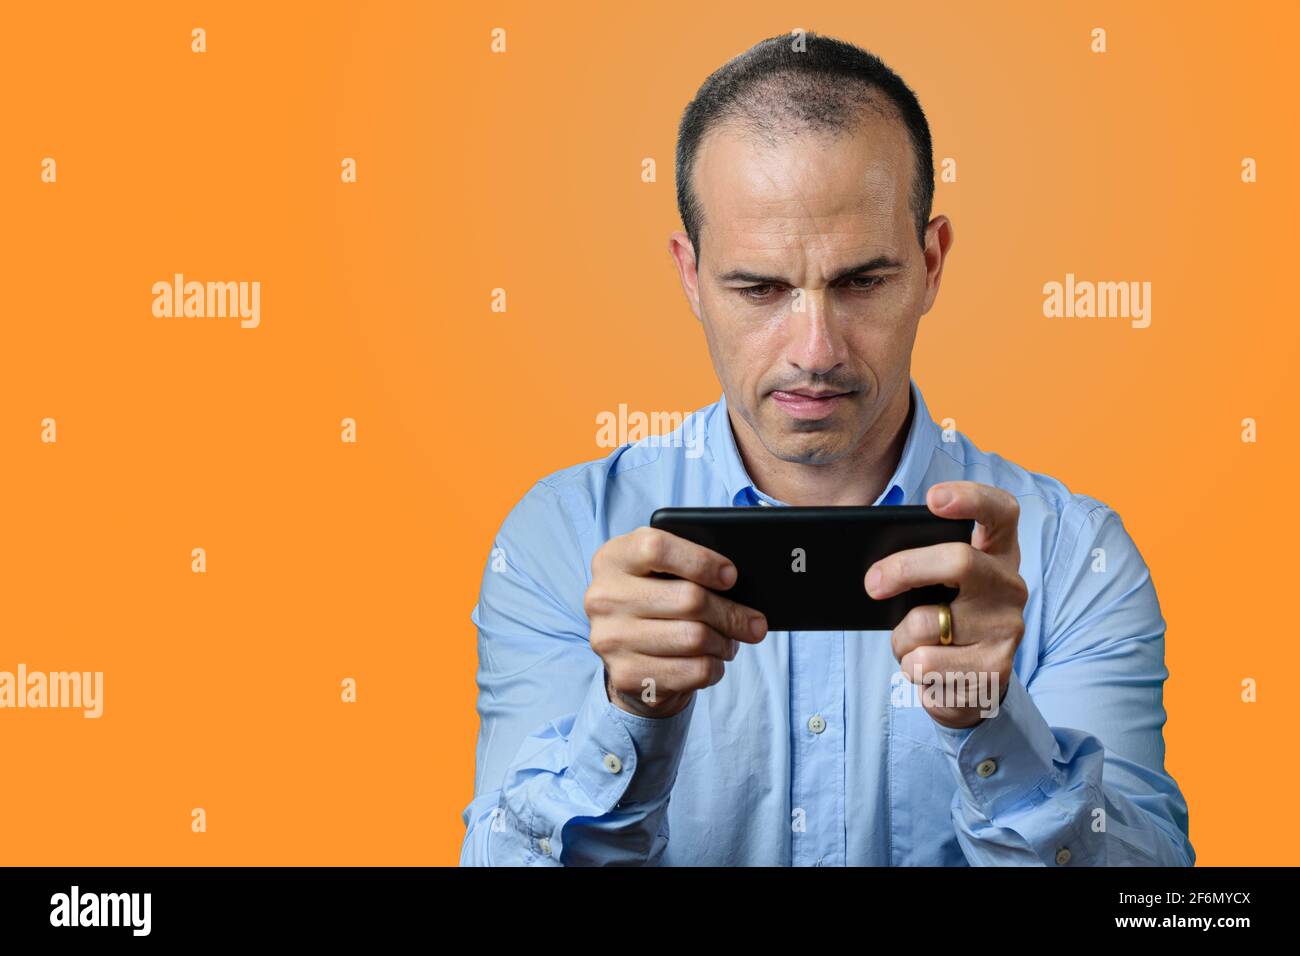 Reifer Mann in formeller Kleidung beißt seine Zunge und hält das Smartphone horizontal. Orangefarbener Hintergrund Stockfoto